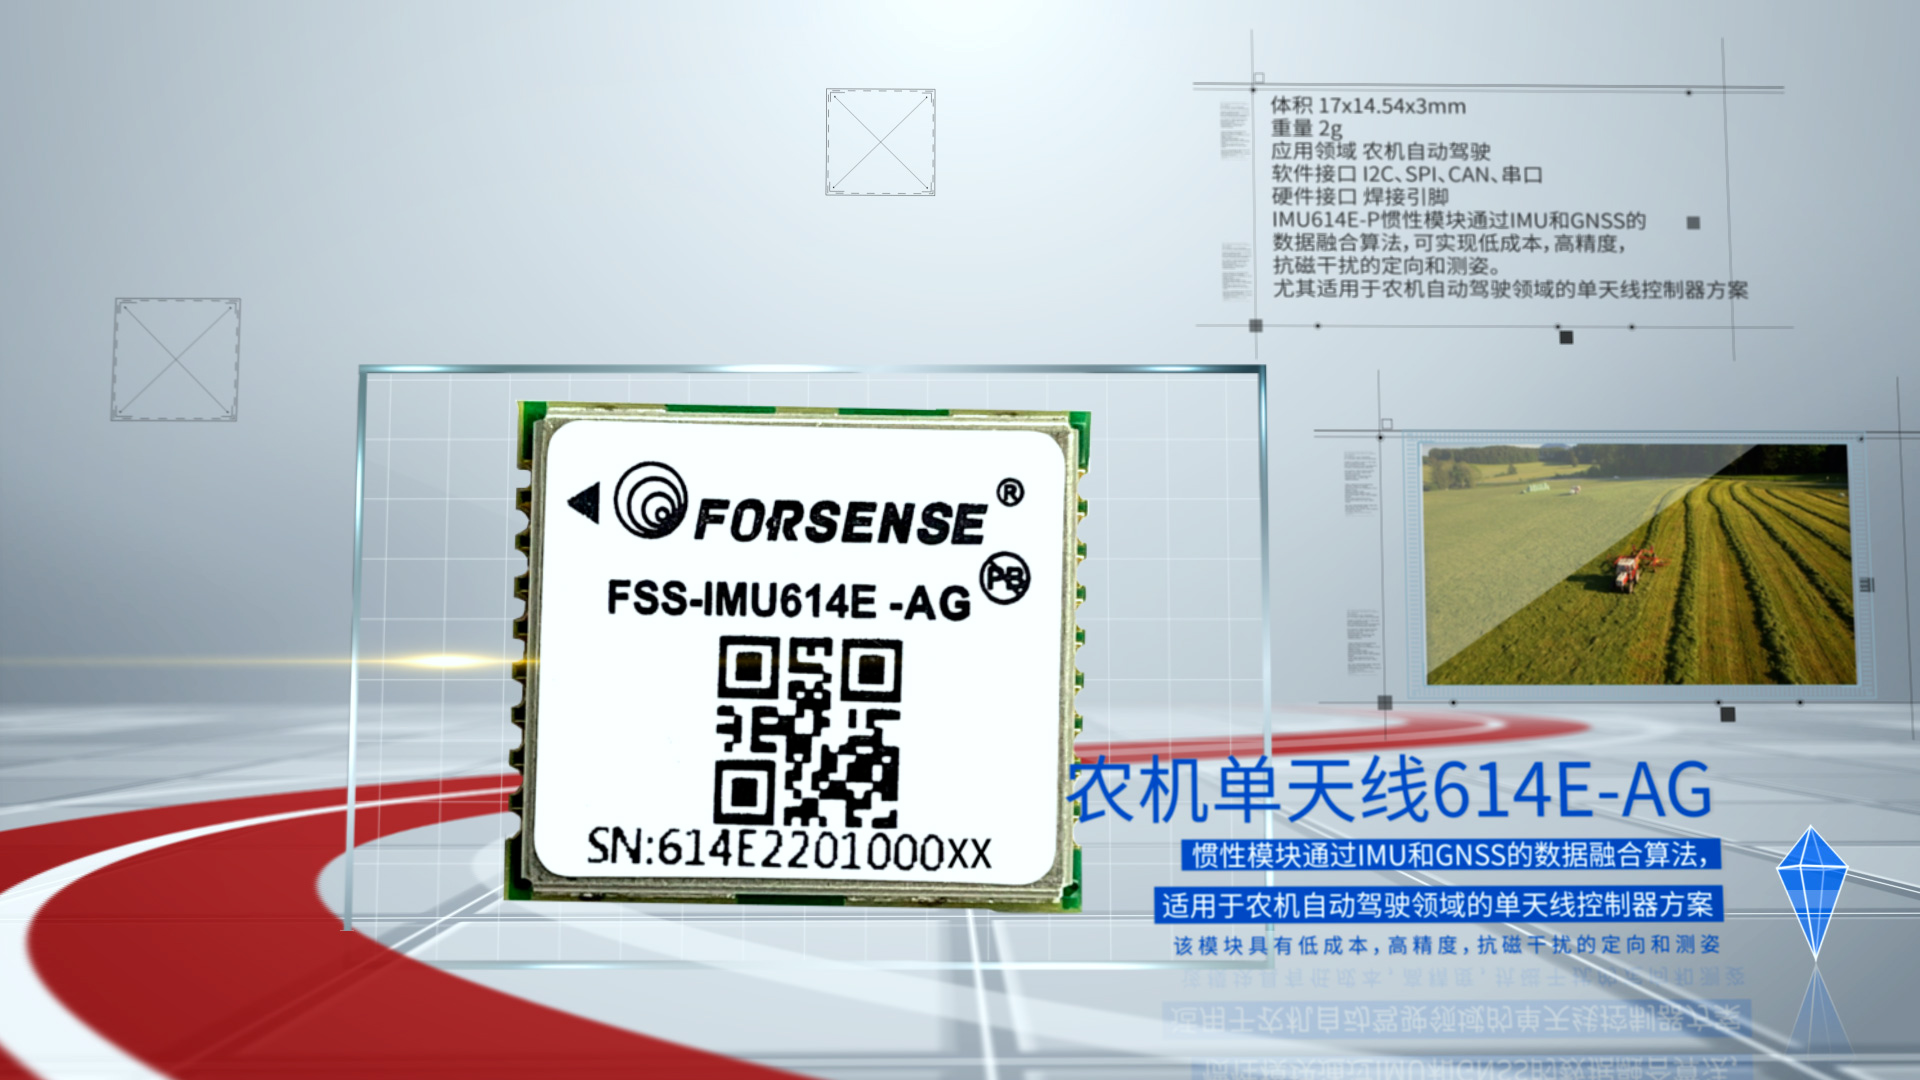 鸭博体育(中国)有限公司科技宣传片614E-AG自动农业农机自动驾驶.jpg